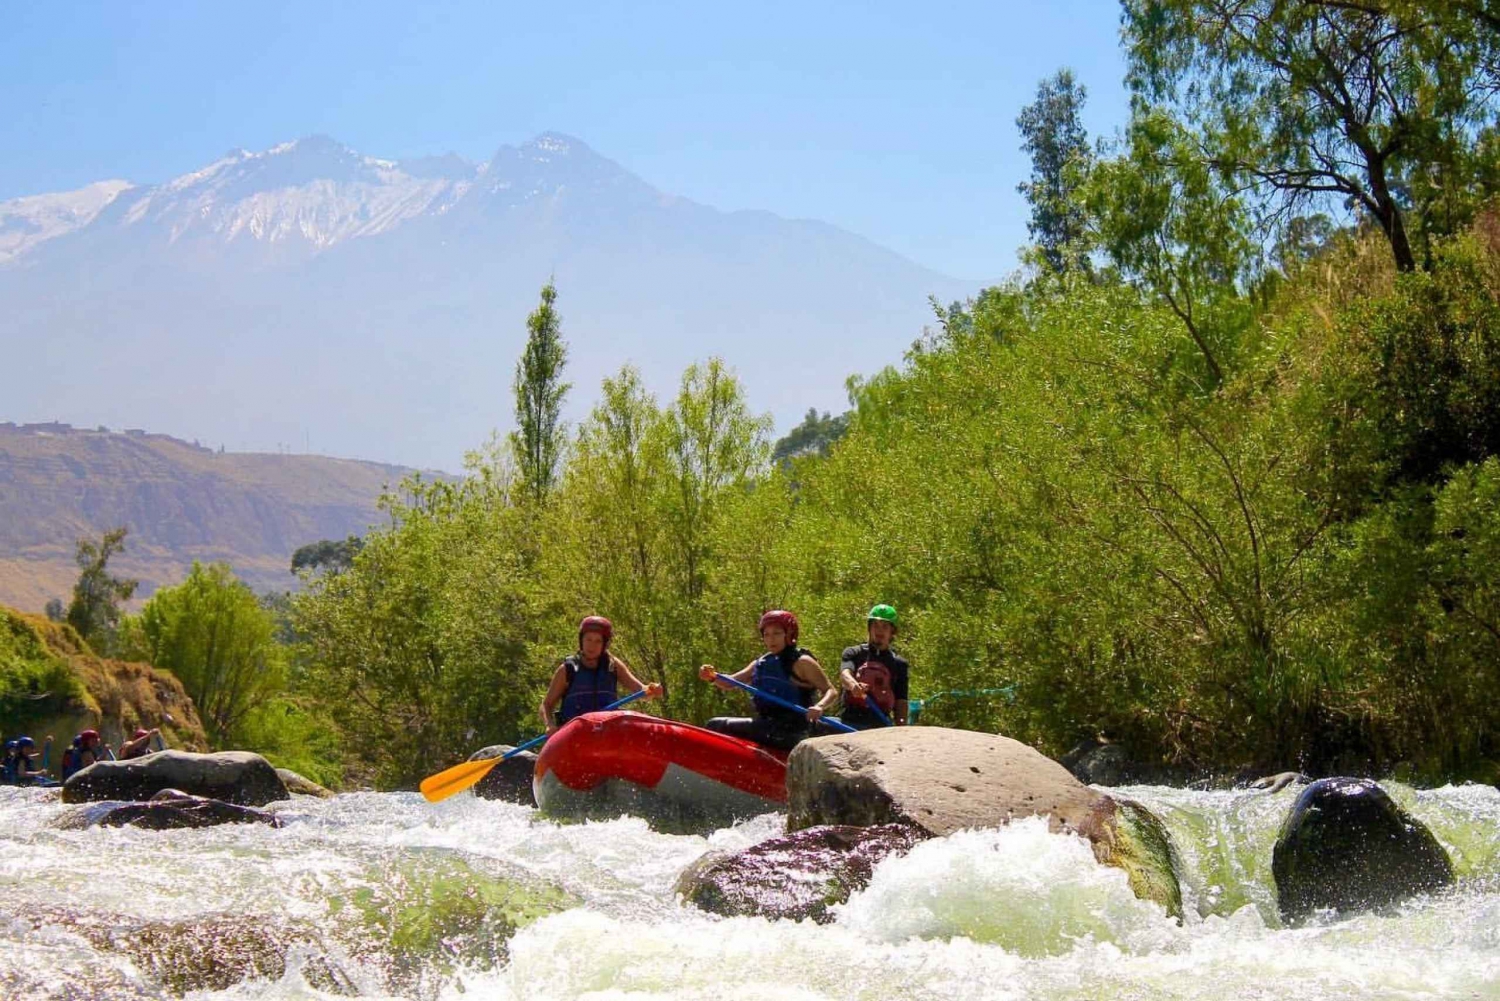 Z Arequipy || Rafting na rzece Chili ||